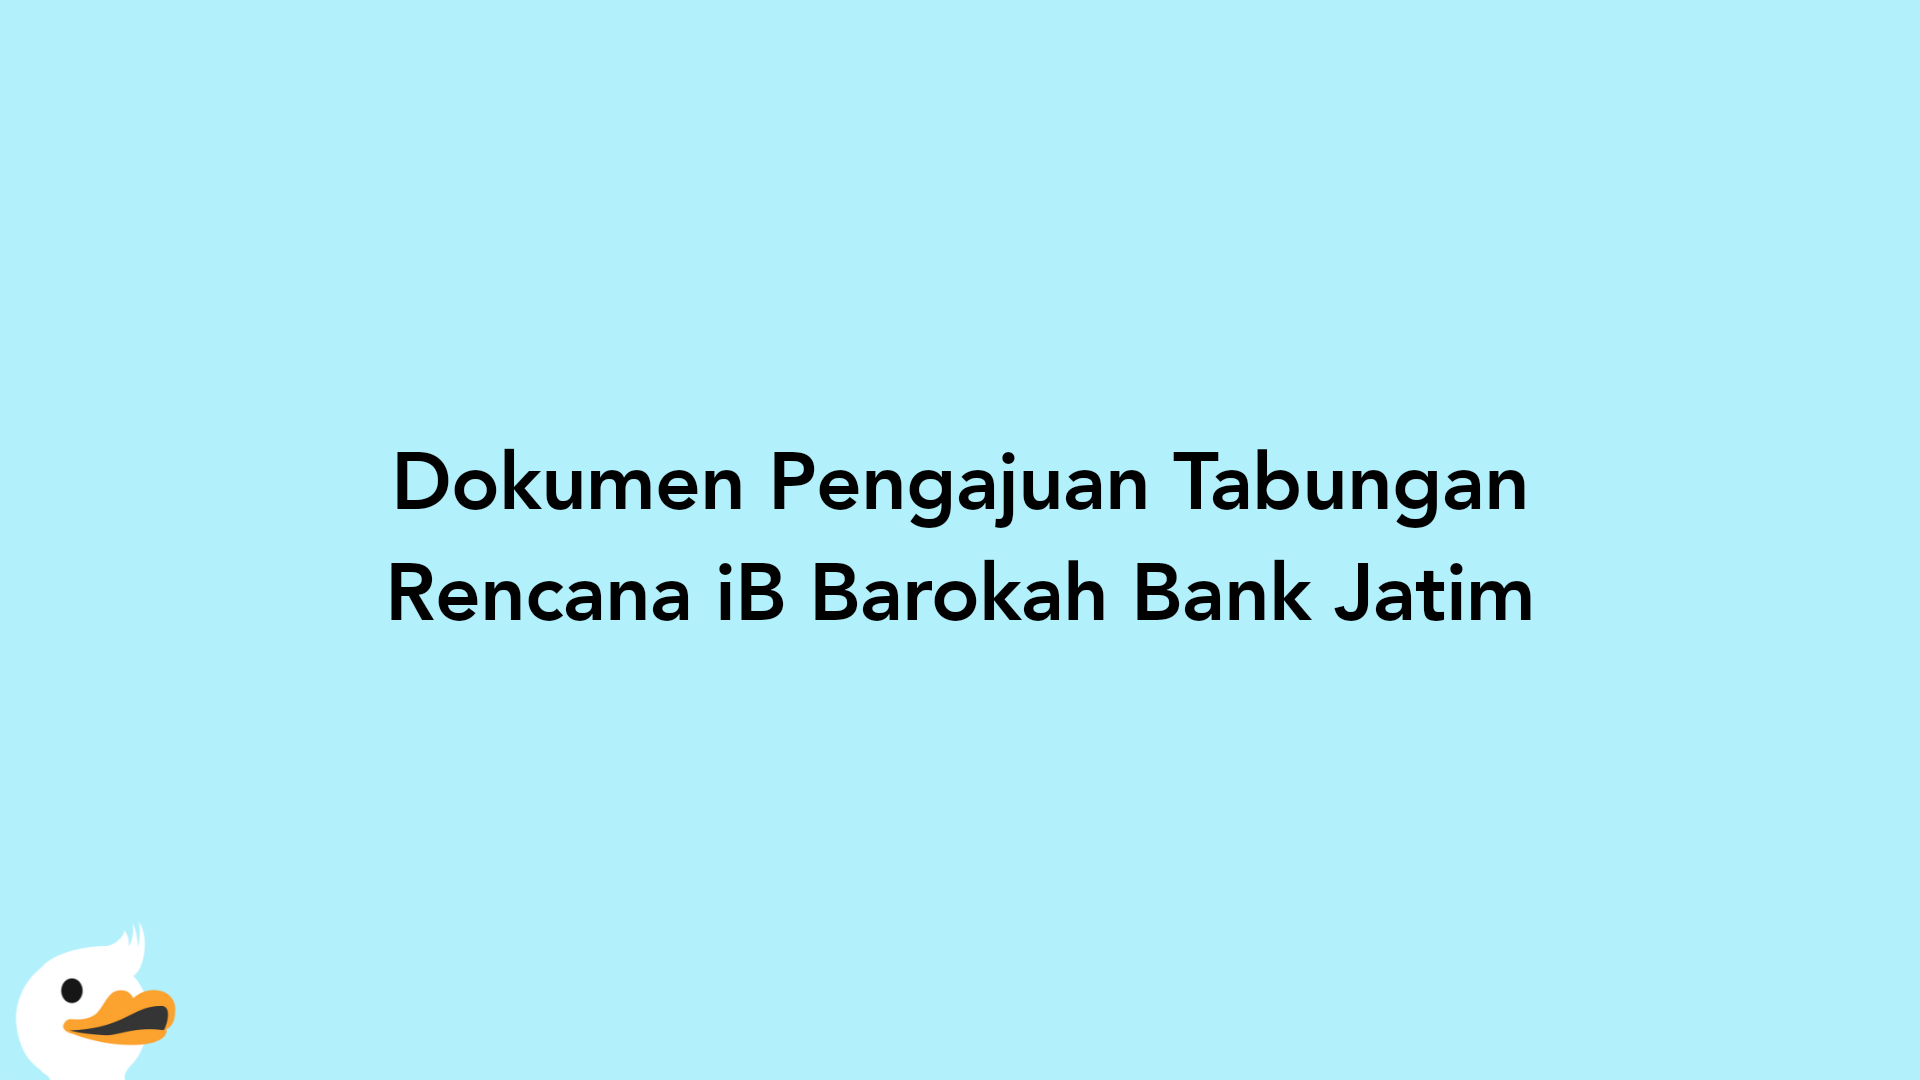 Dokumen Pengajuan Tabungan Rencana iB Barokah Bank Jatim